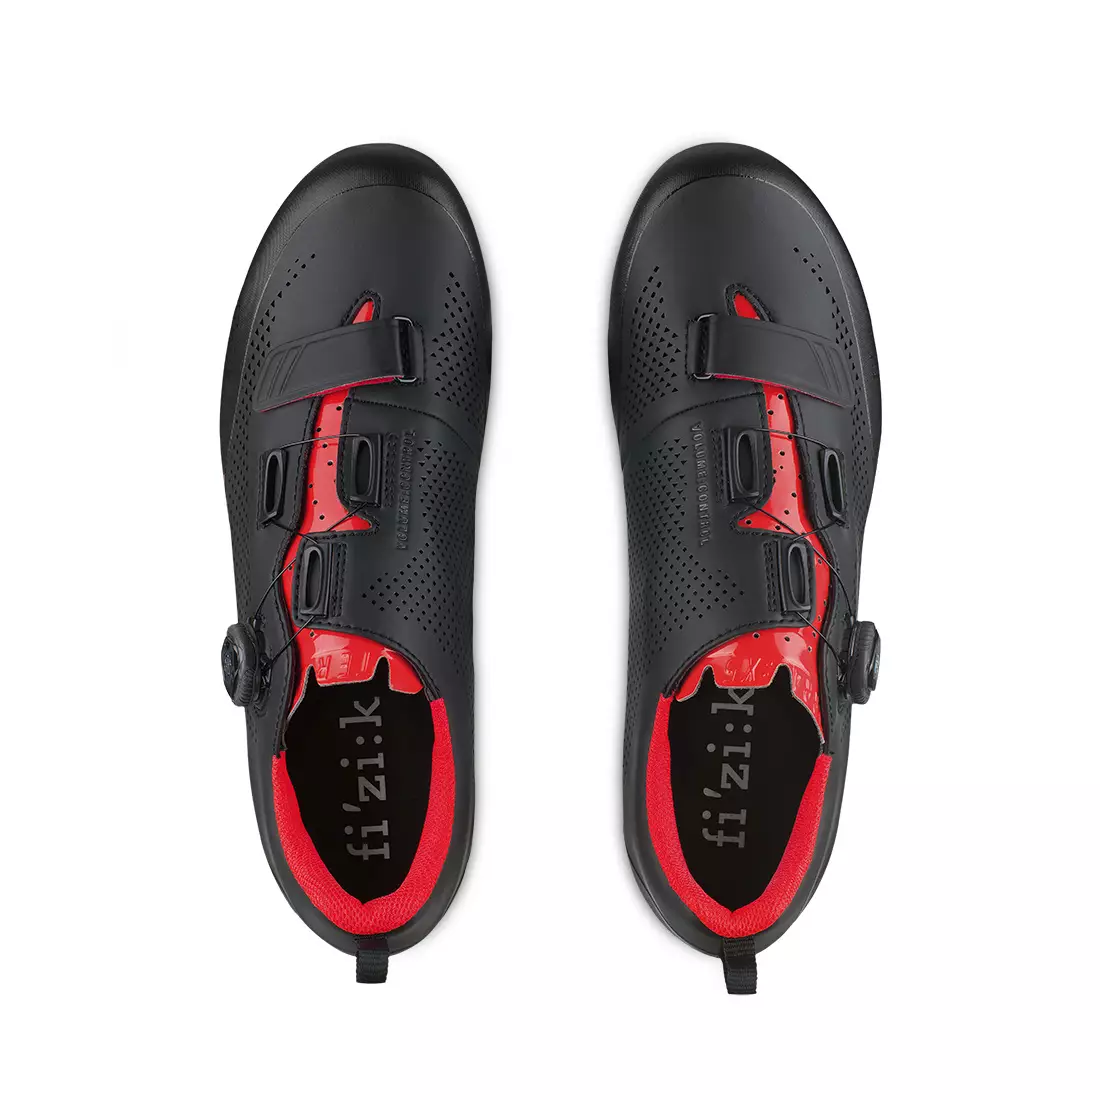 FIZIK buty rowerowe mtb Terra X5 czarno-czerwony